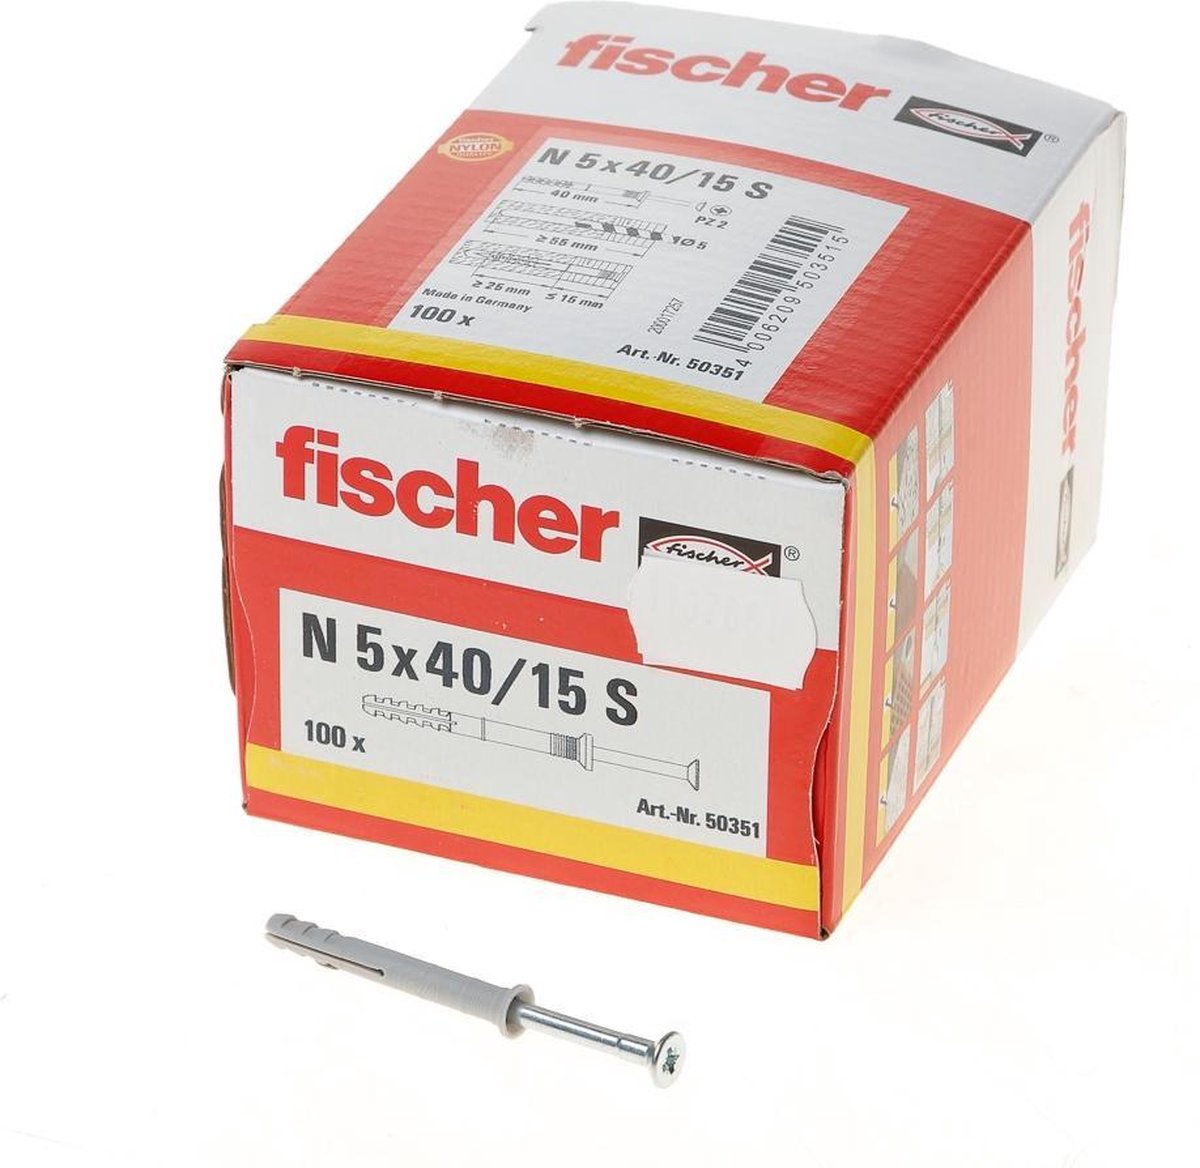 Fischer N 5X40/15 S NAGELPLUG 100 St - Grijs